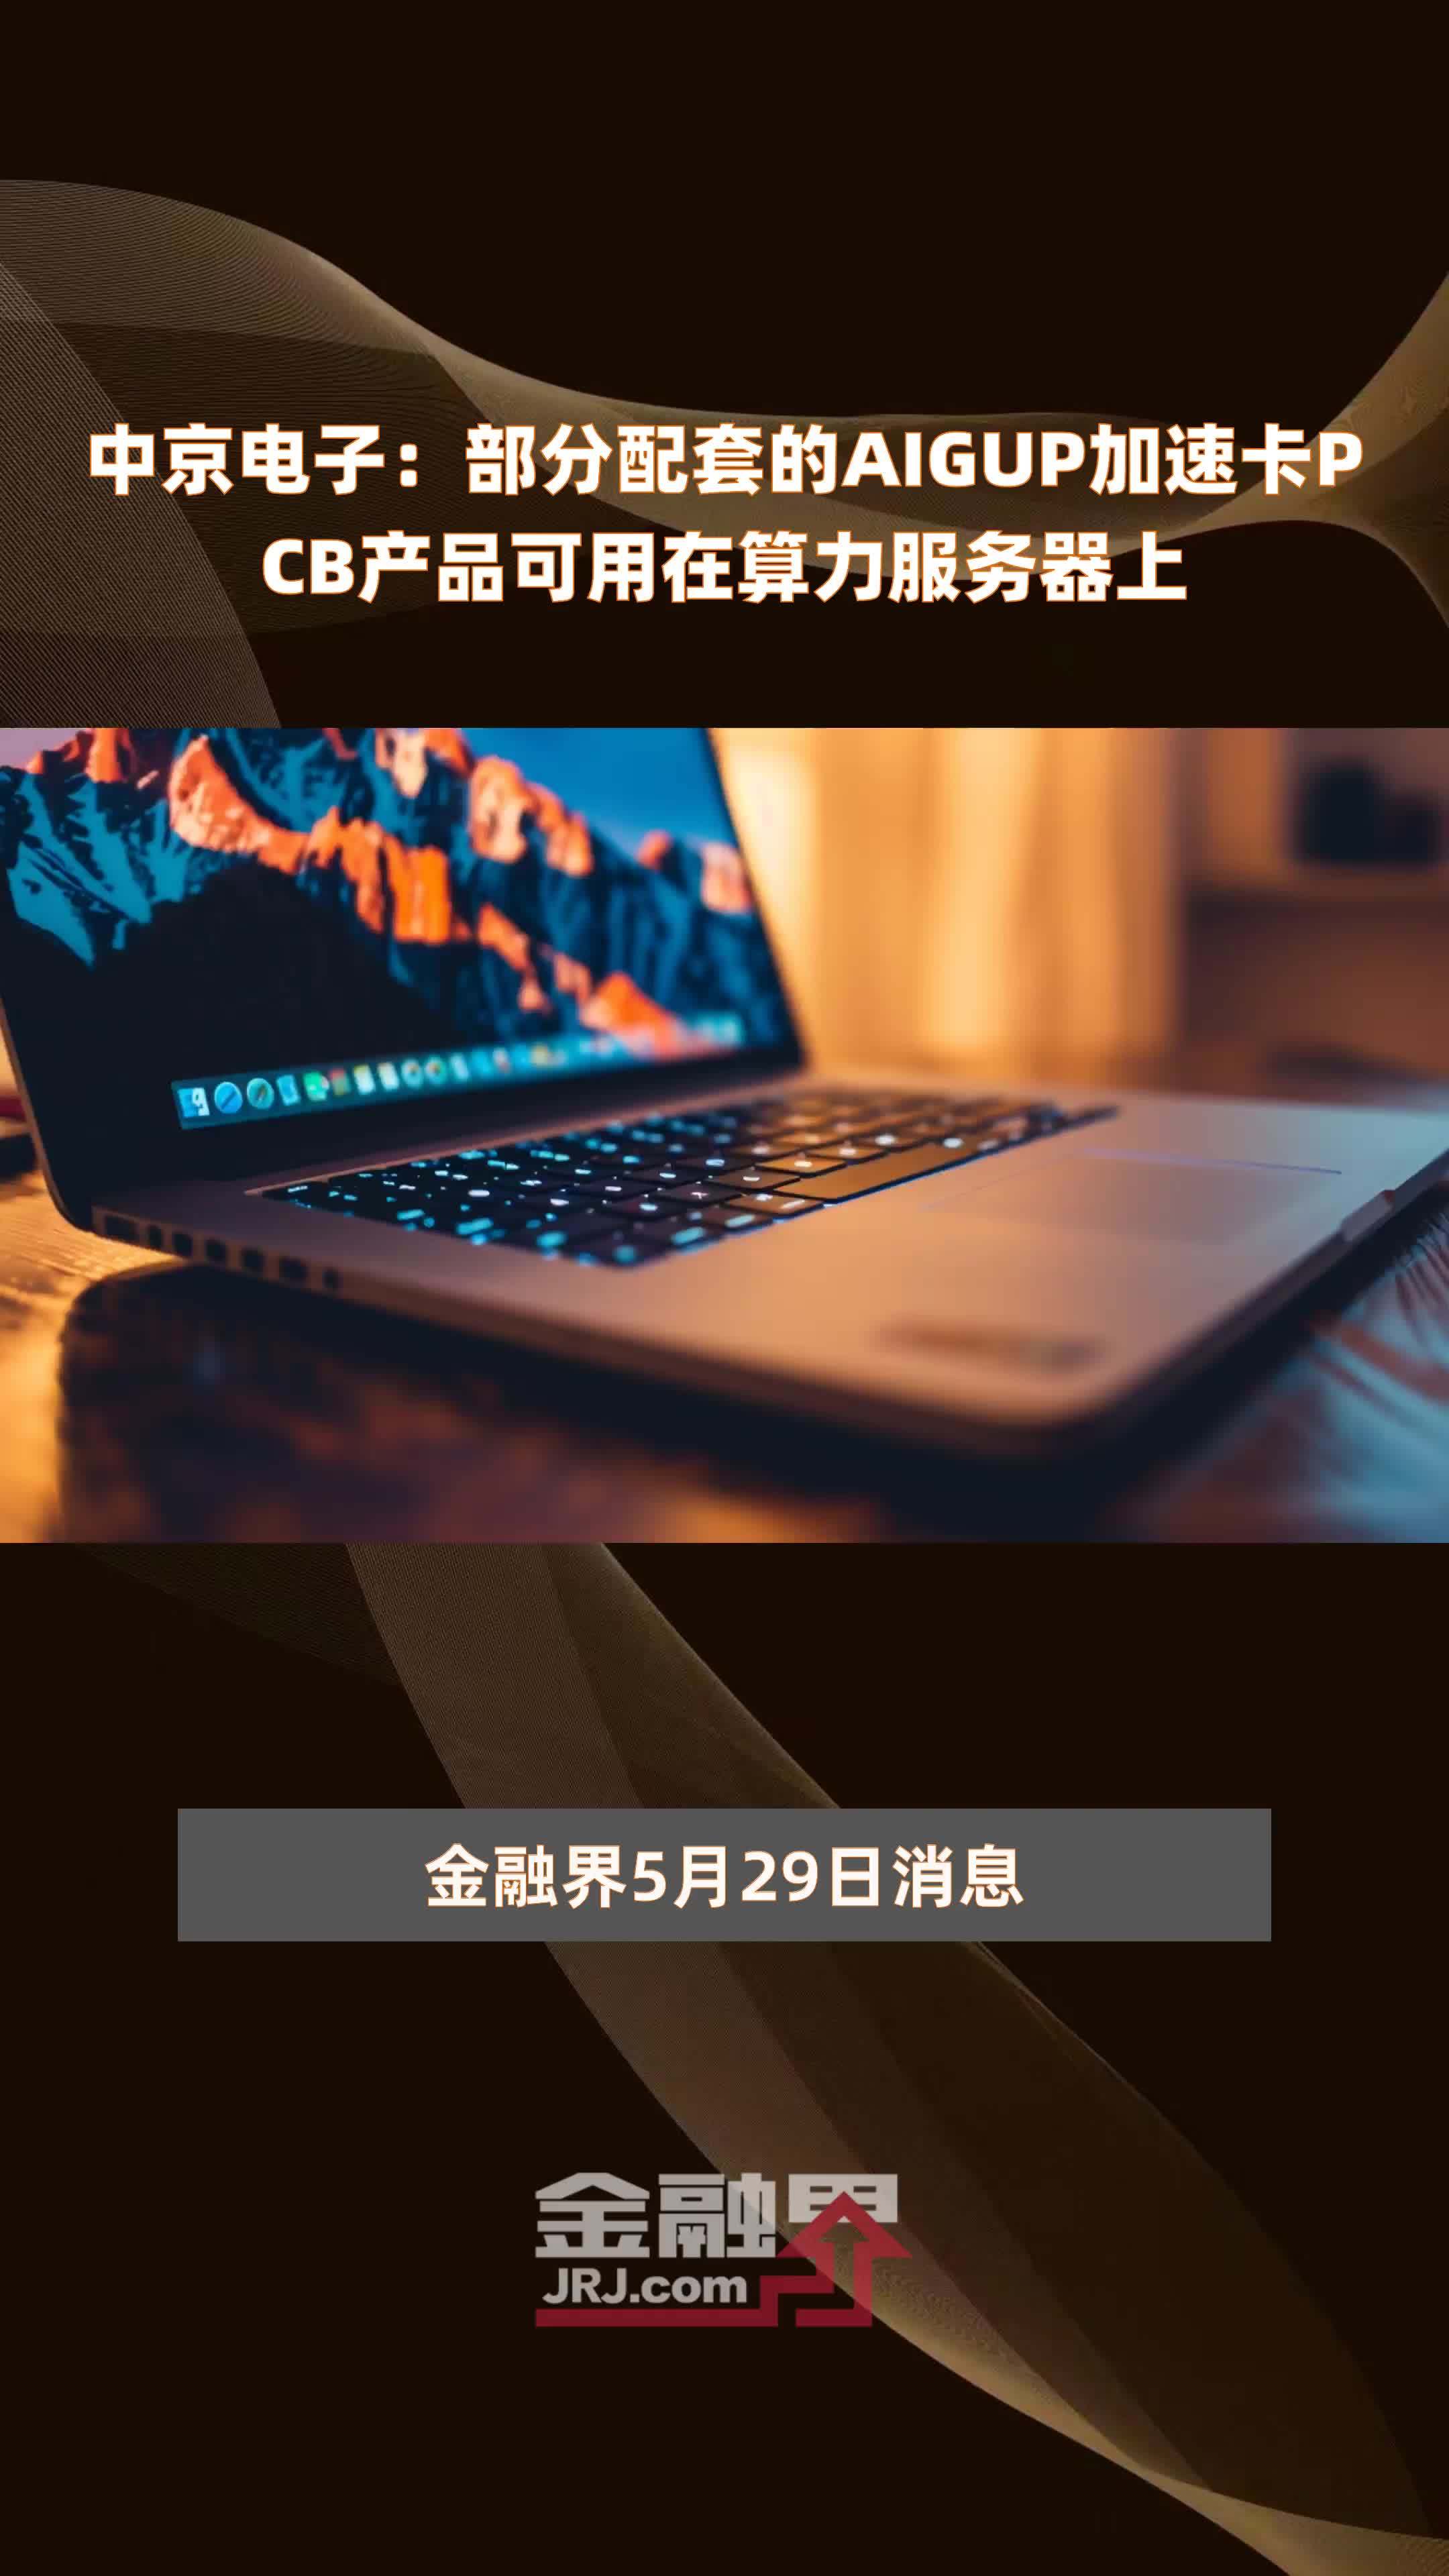 中京电子部分配套的aigup加速卡pcb产品可用在算力服务器上快报